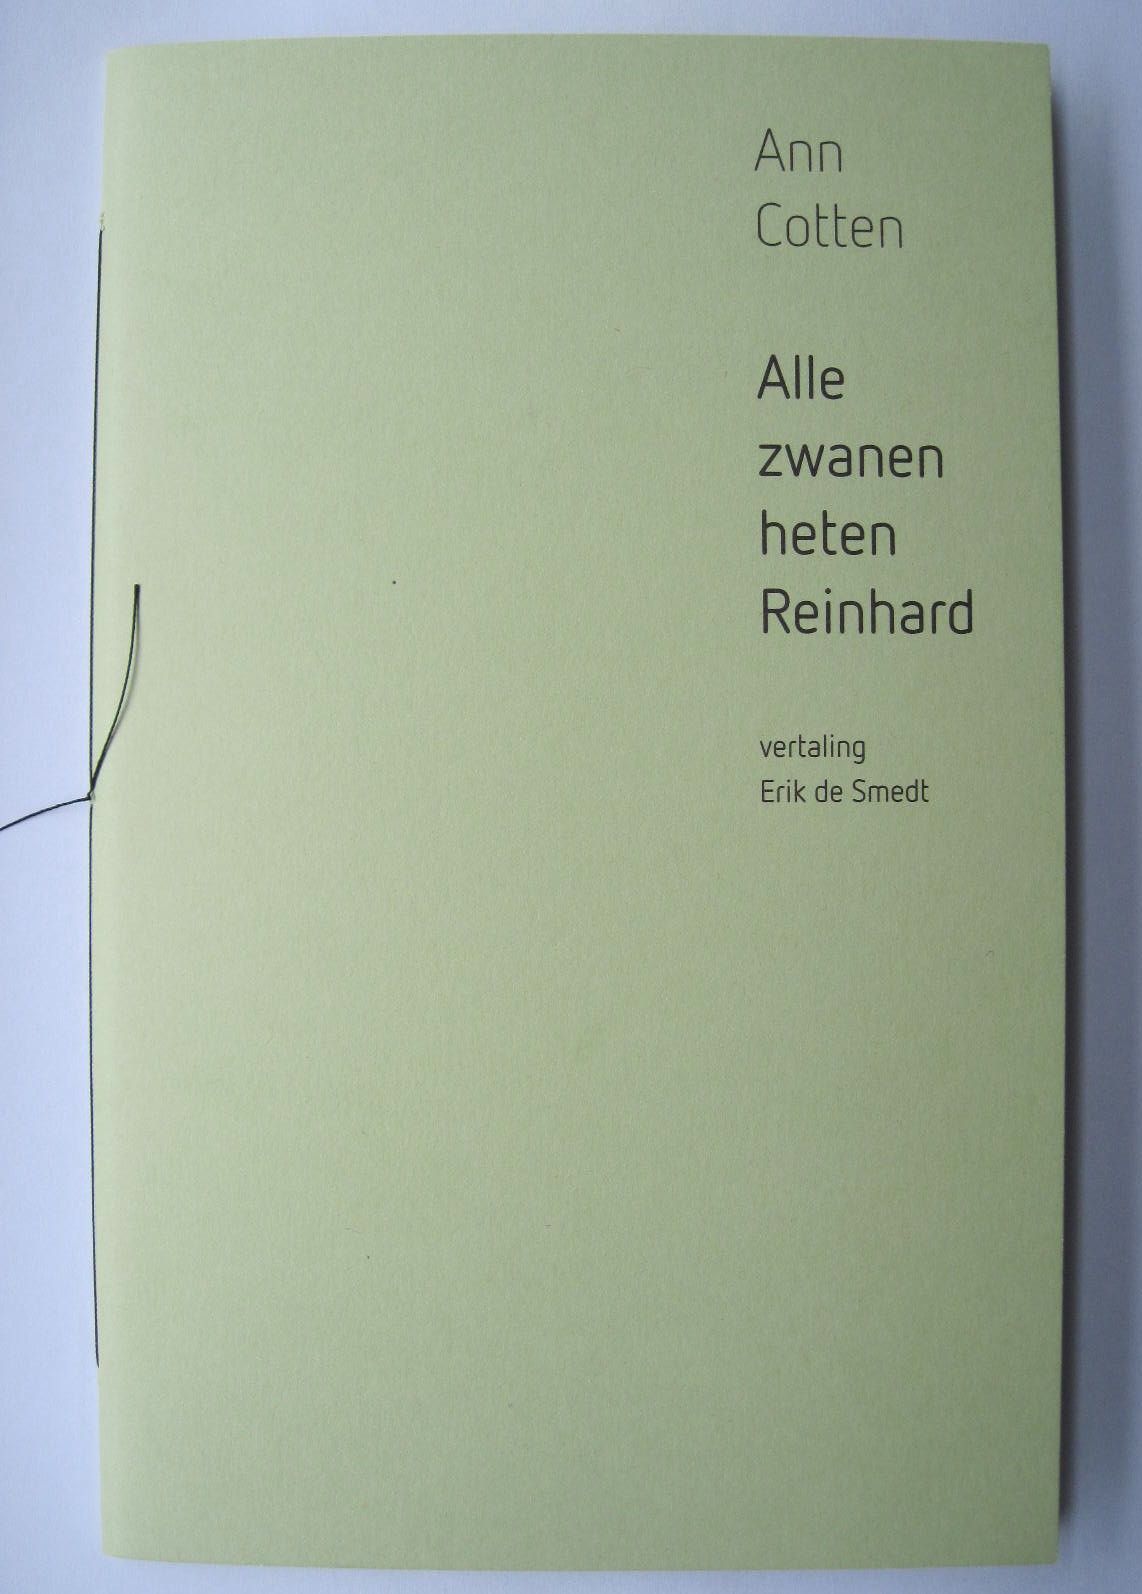 Ann Cotten, 'Alle zwanen heten Reinhard'